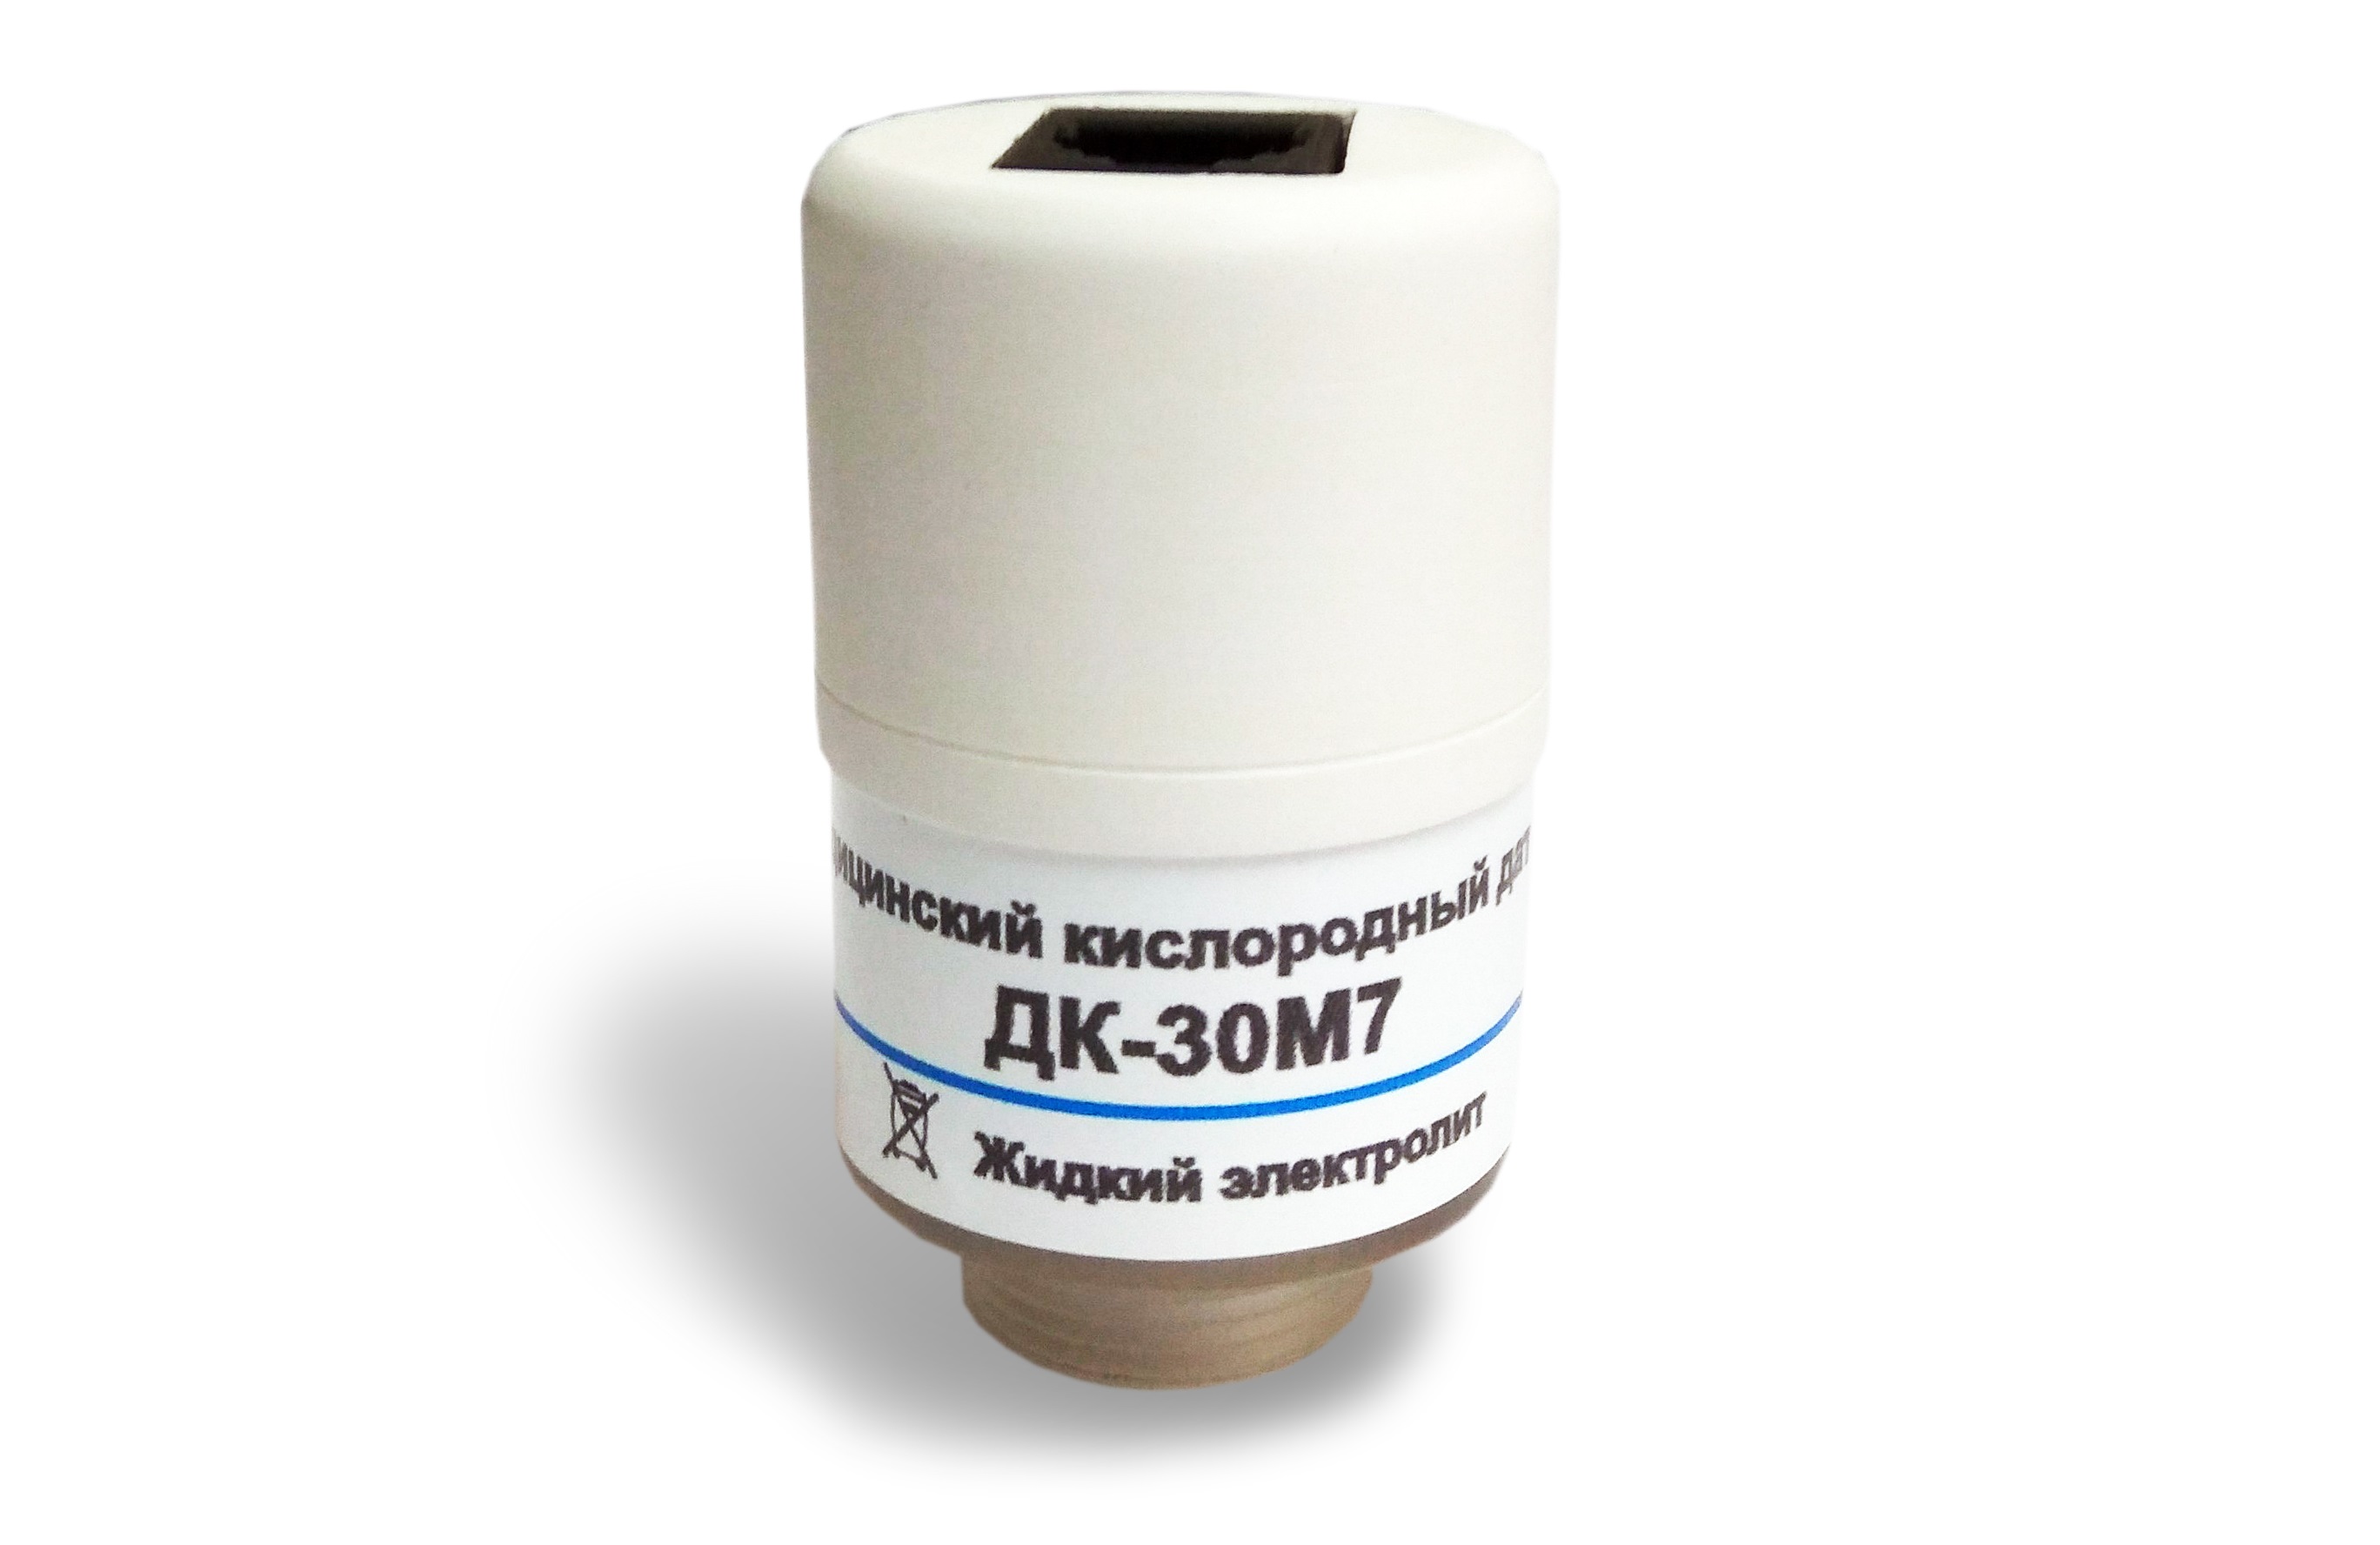 Медицинский датчик кислорода ДК-30М7